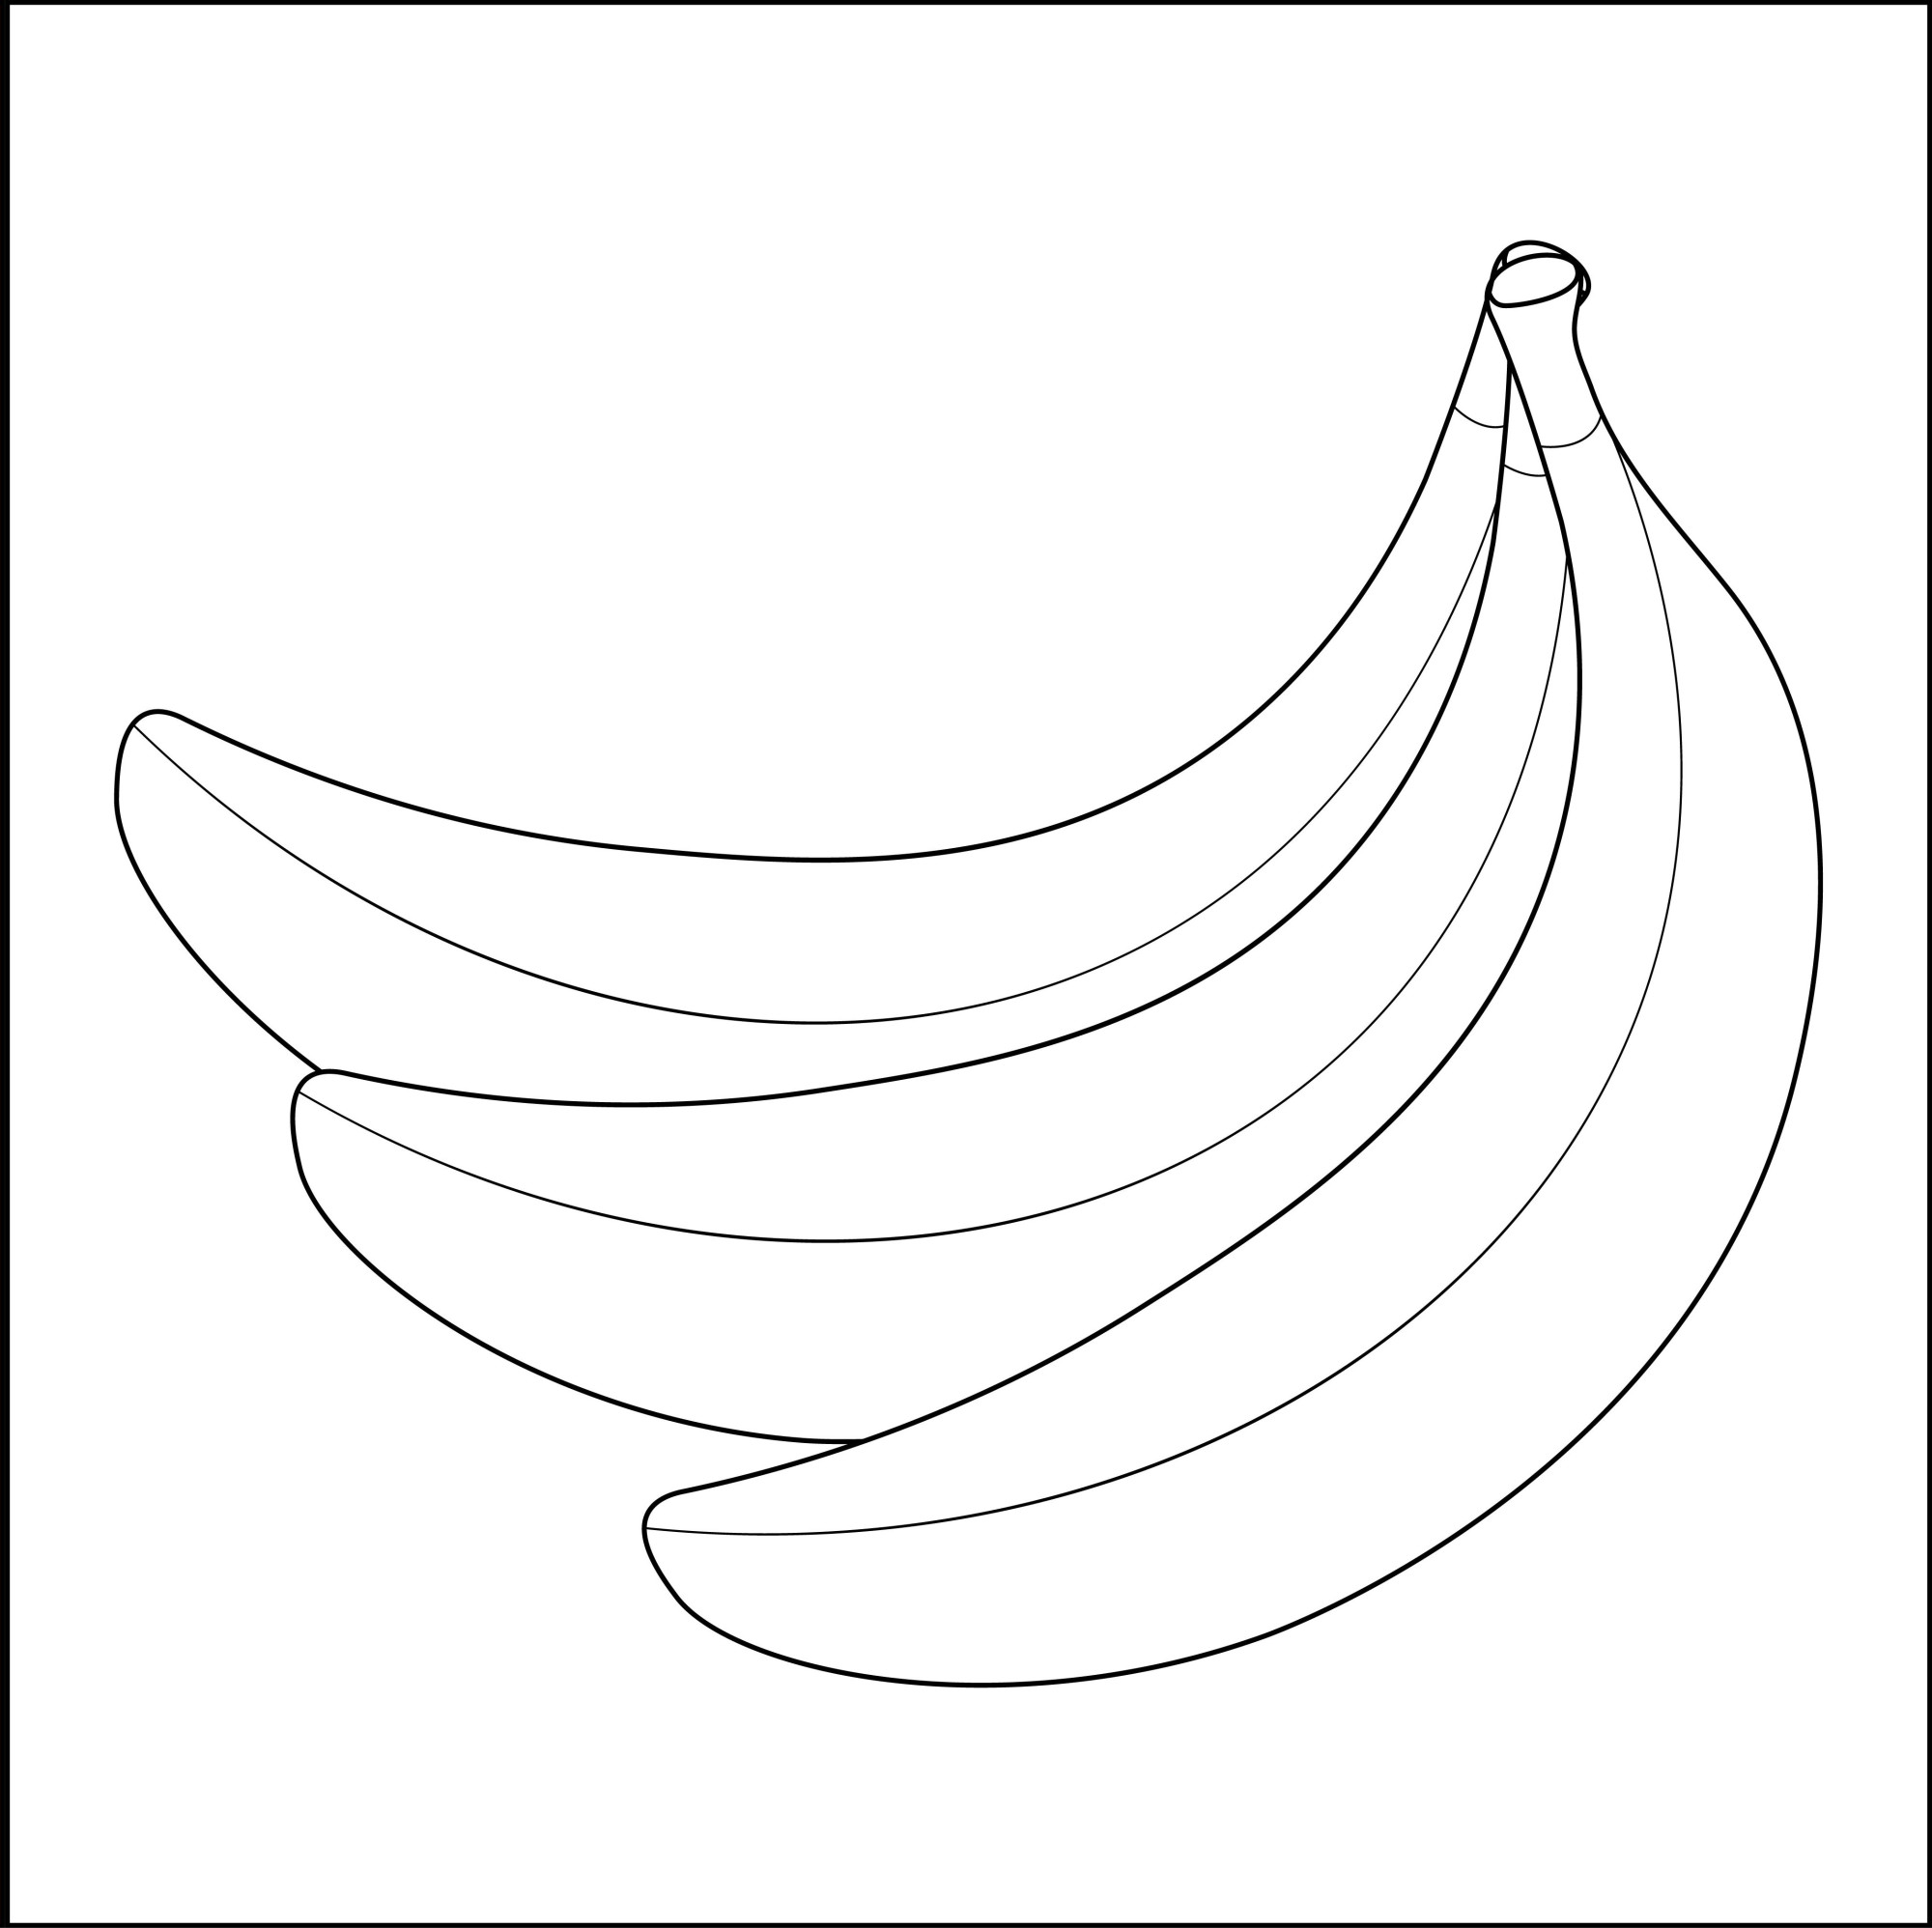 Раскраска для детей: бананы